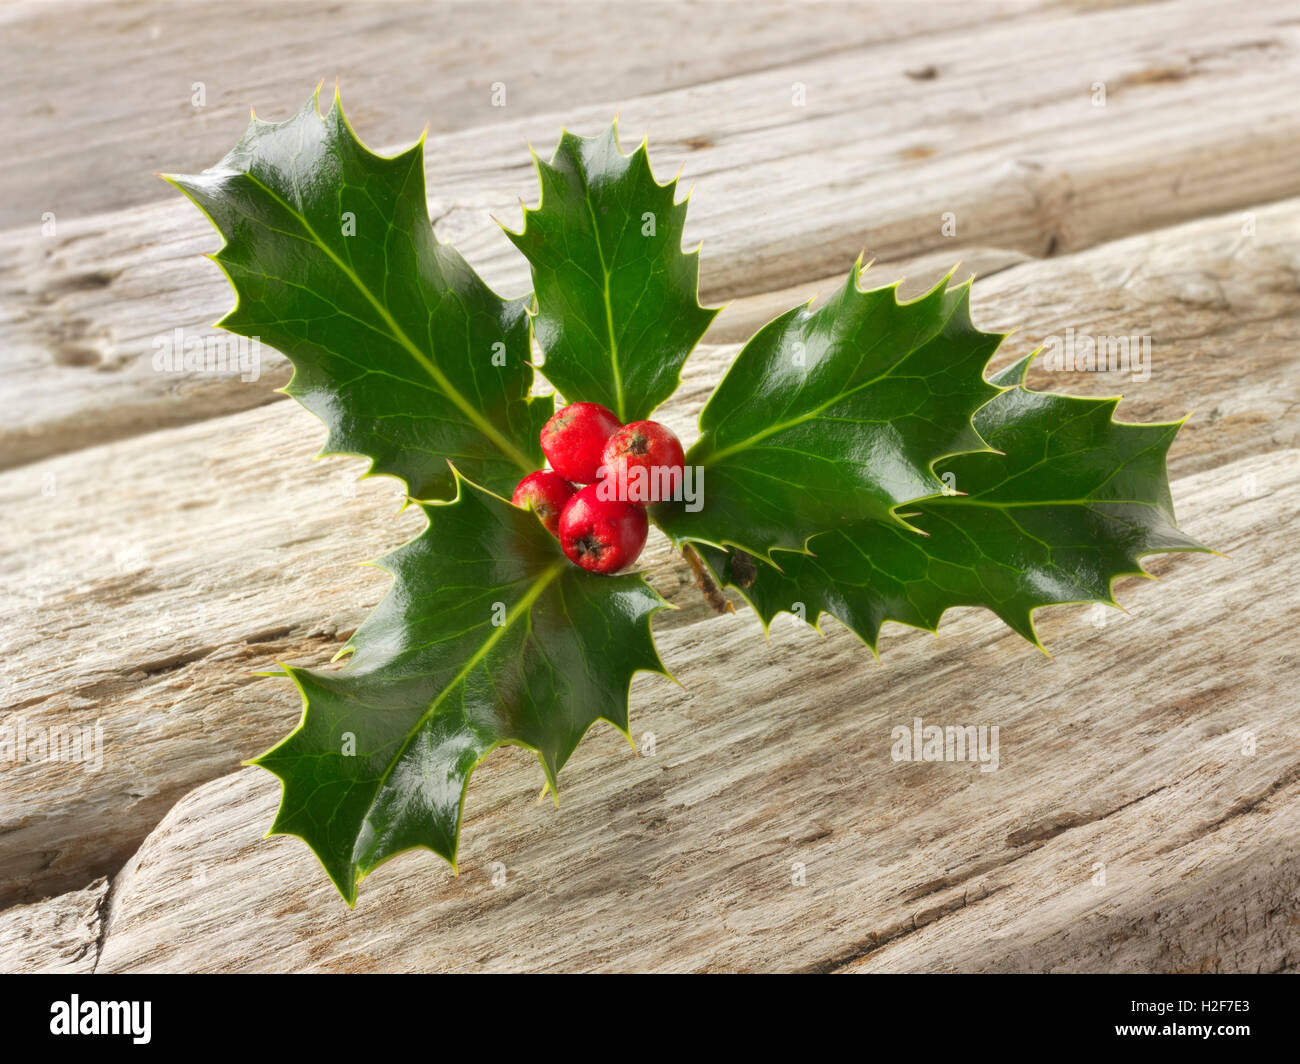 Festliche saisonale Holly Blätter mit roten Beeren - Ilex aquifolium Stockfoto